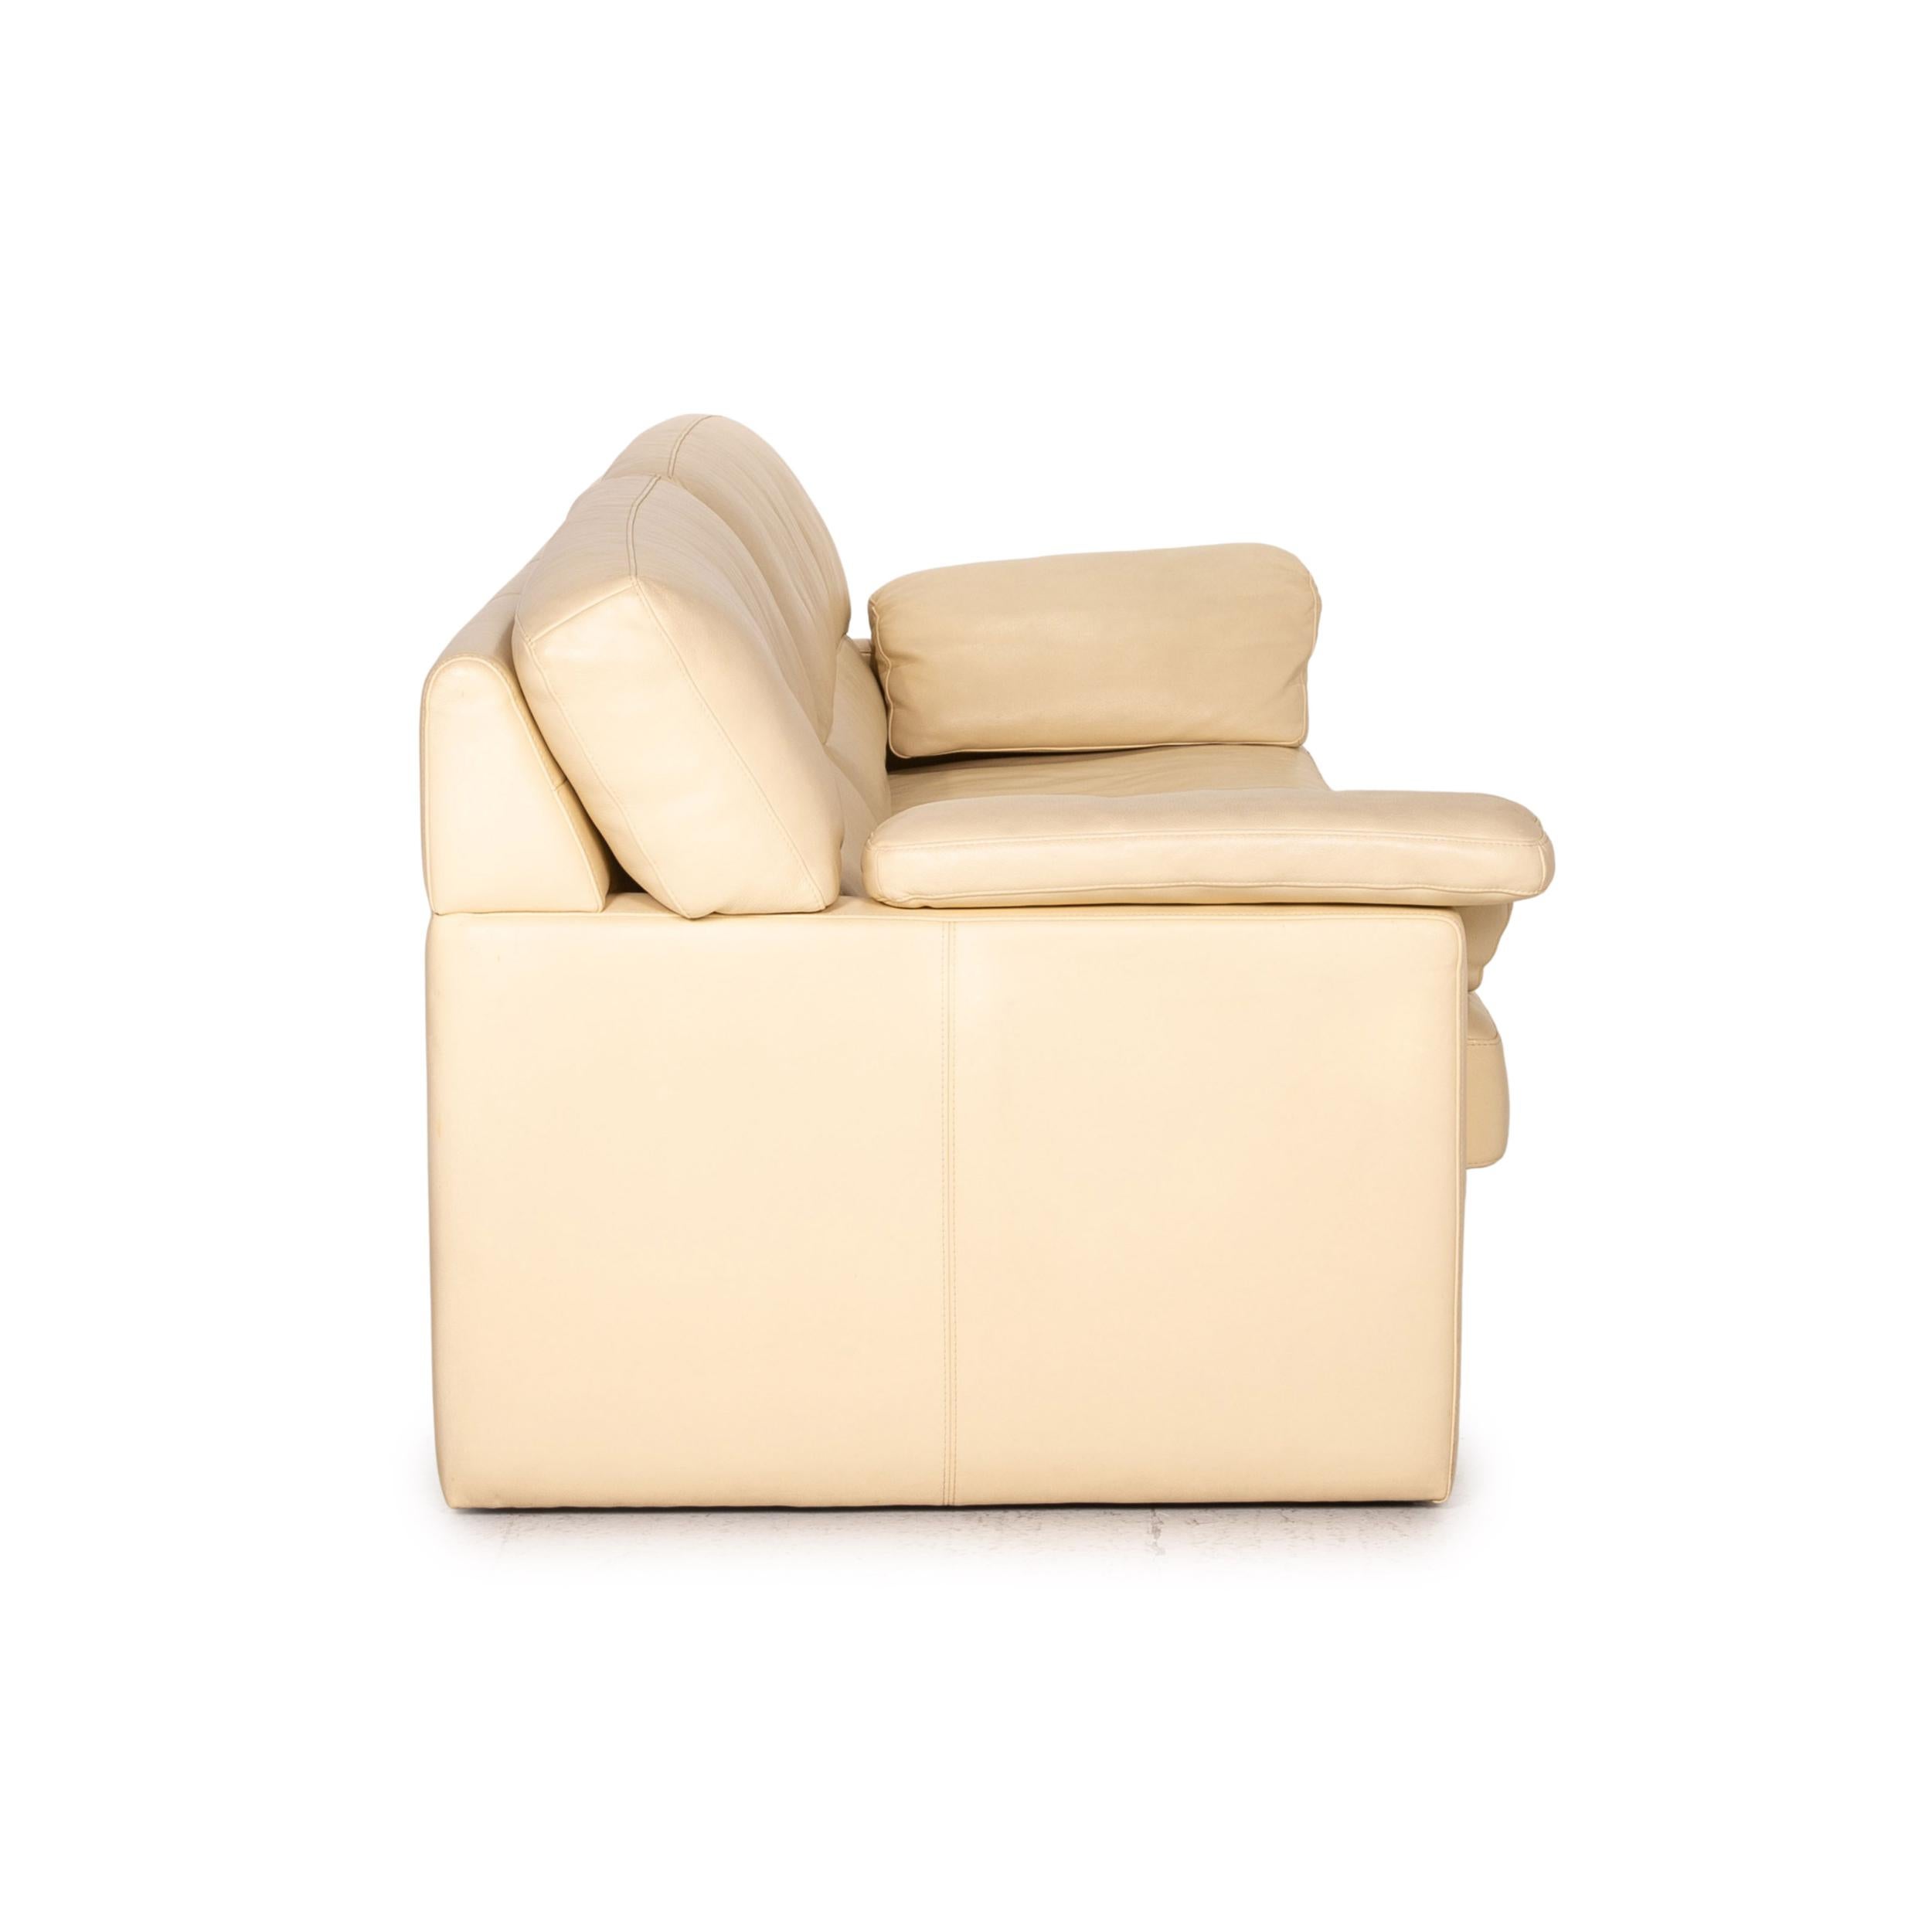 Bielefelder Werkstätten Leather Sofa Cream Three-Seater Couch For Sale 2